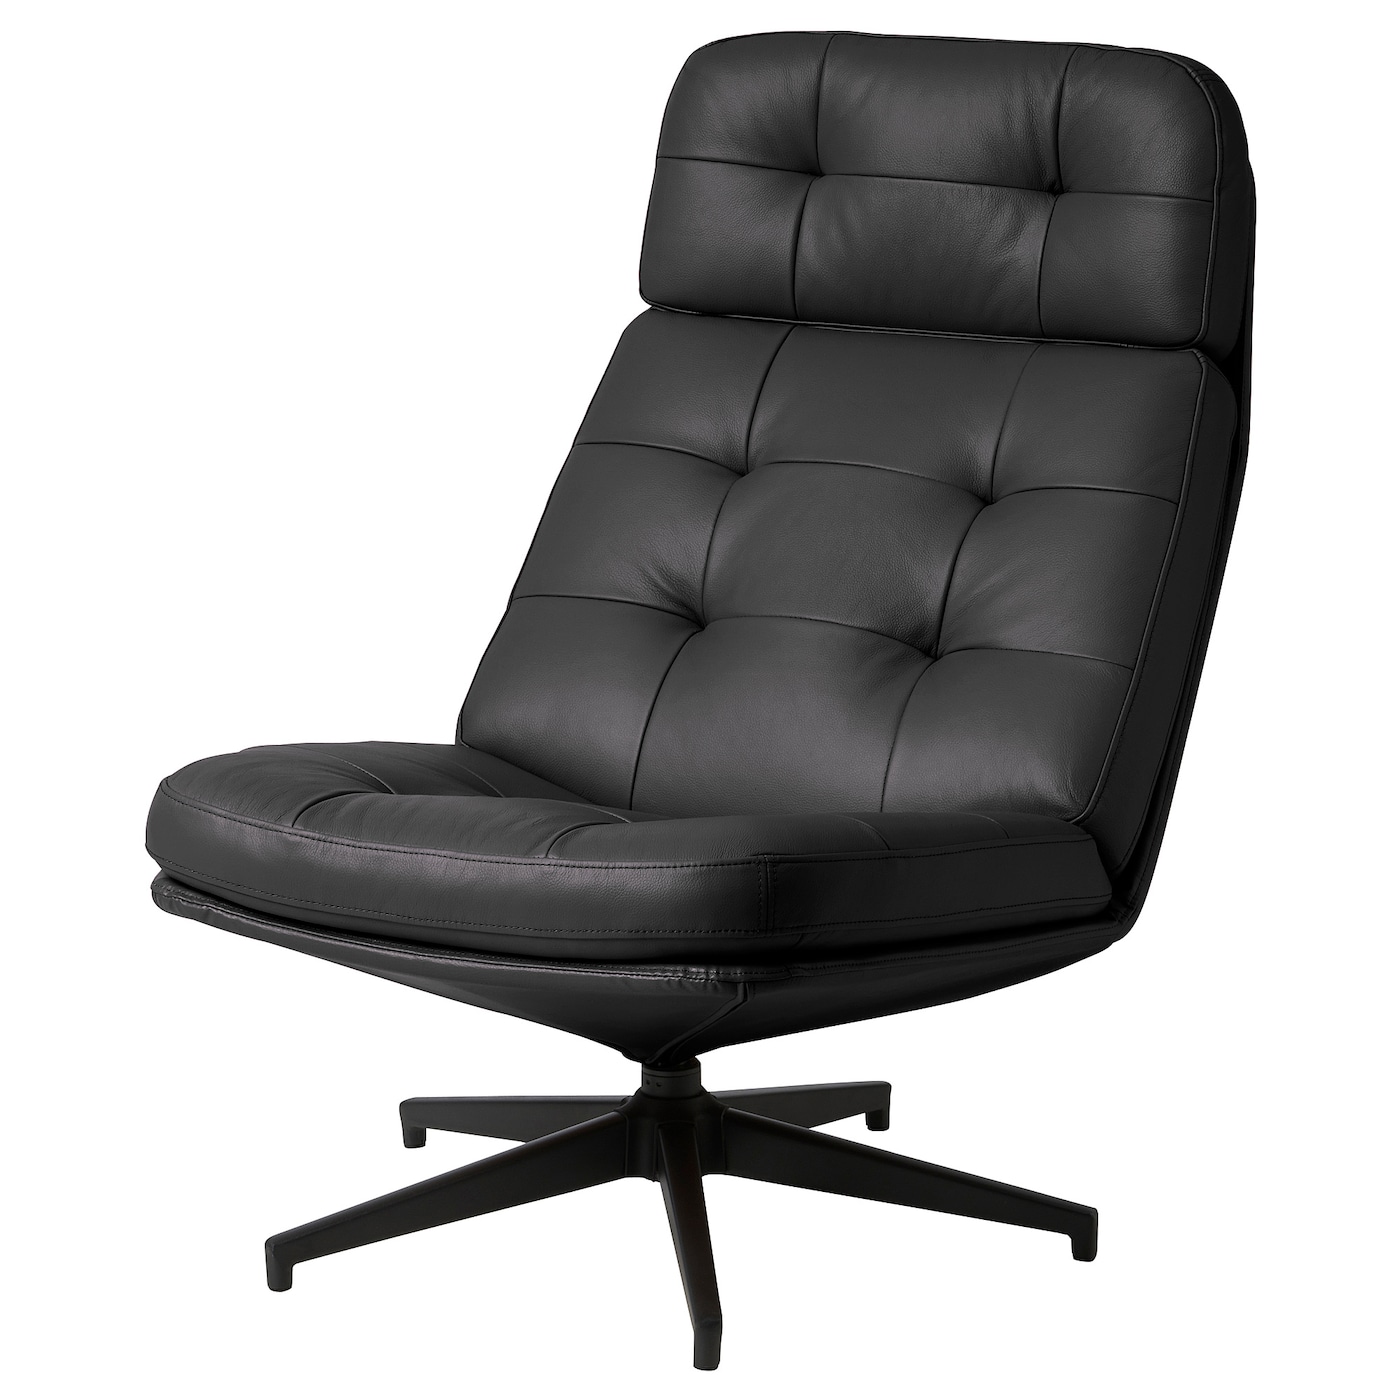 ХАВБЕРГ Вращающееся кресло, Гранн/Бомстад черный HAVBERG IKEA стоматологическое кресло седло кресло регулируемое подъемное вращающееся компьютерное кресло эргономичные универсальные детали для оф